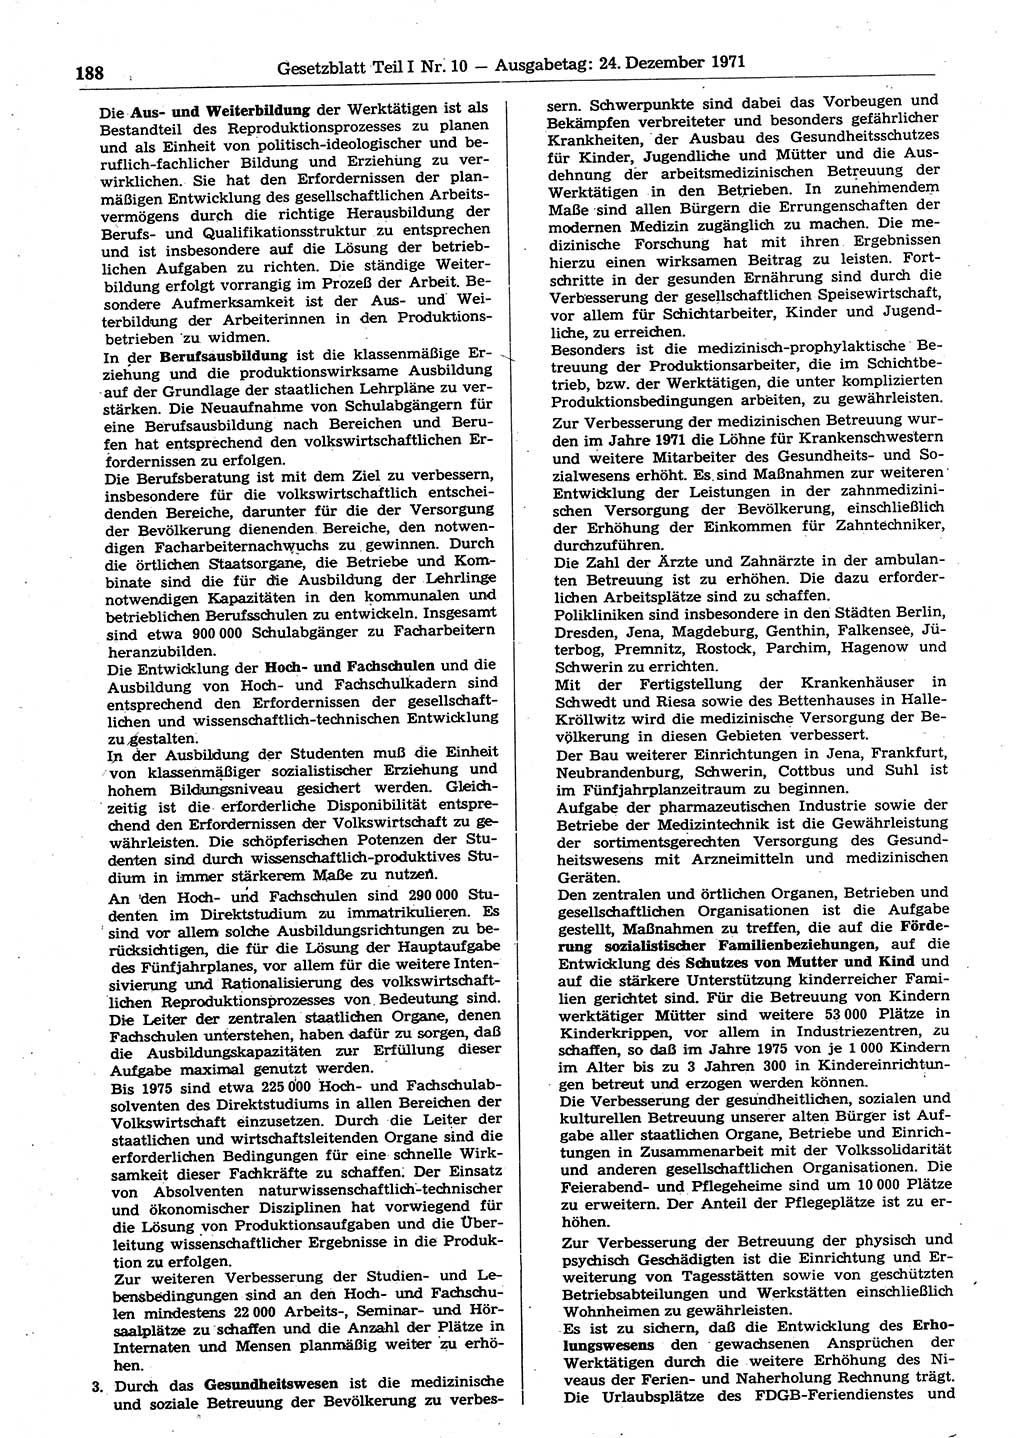 Gesetzblatt (GBl.) der Deutschen Demokratischen Republik (DDR) Teil Ⅰ 1971, Seite 188 (GBl. DDR Ⅰ 1971, S. 188)